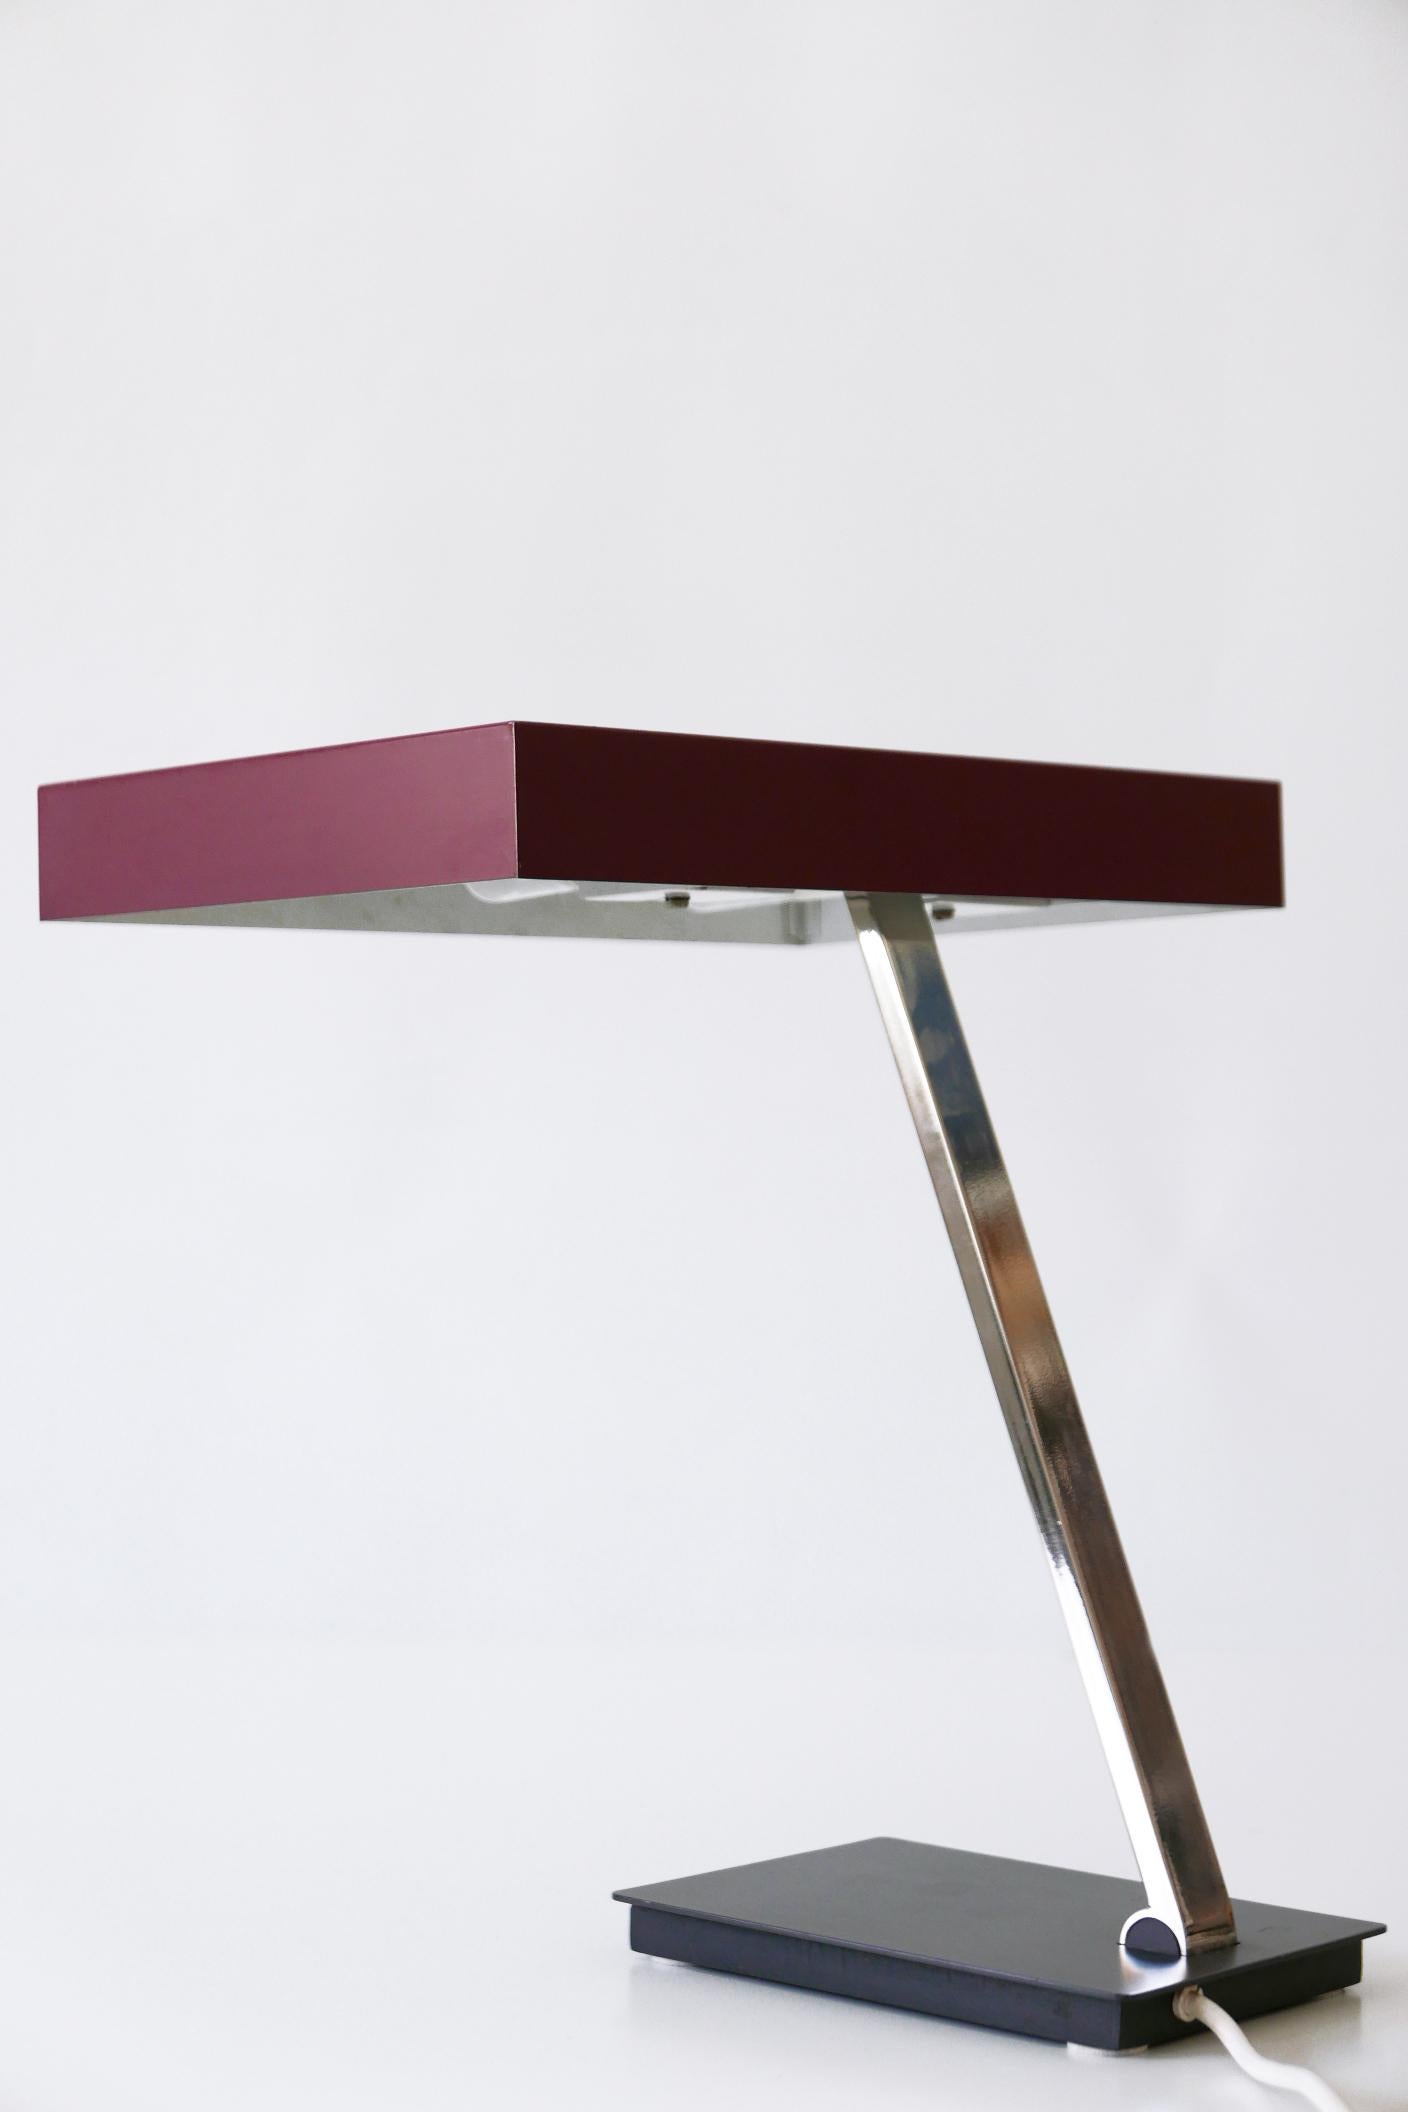 Luxury Mid-Century Modern President Table Lamp by Kaiser Leuchten 1960s Germany For Sale 2